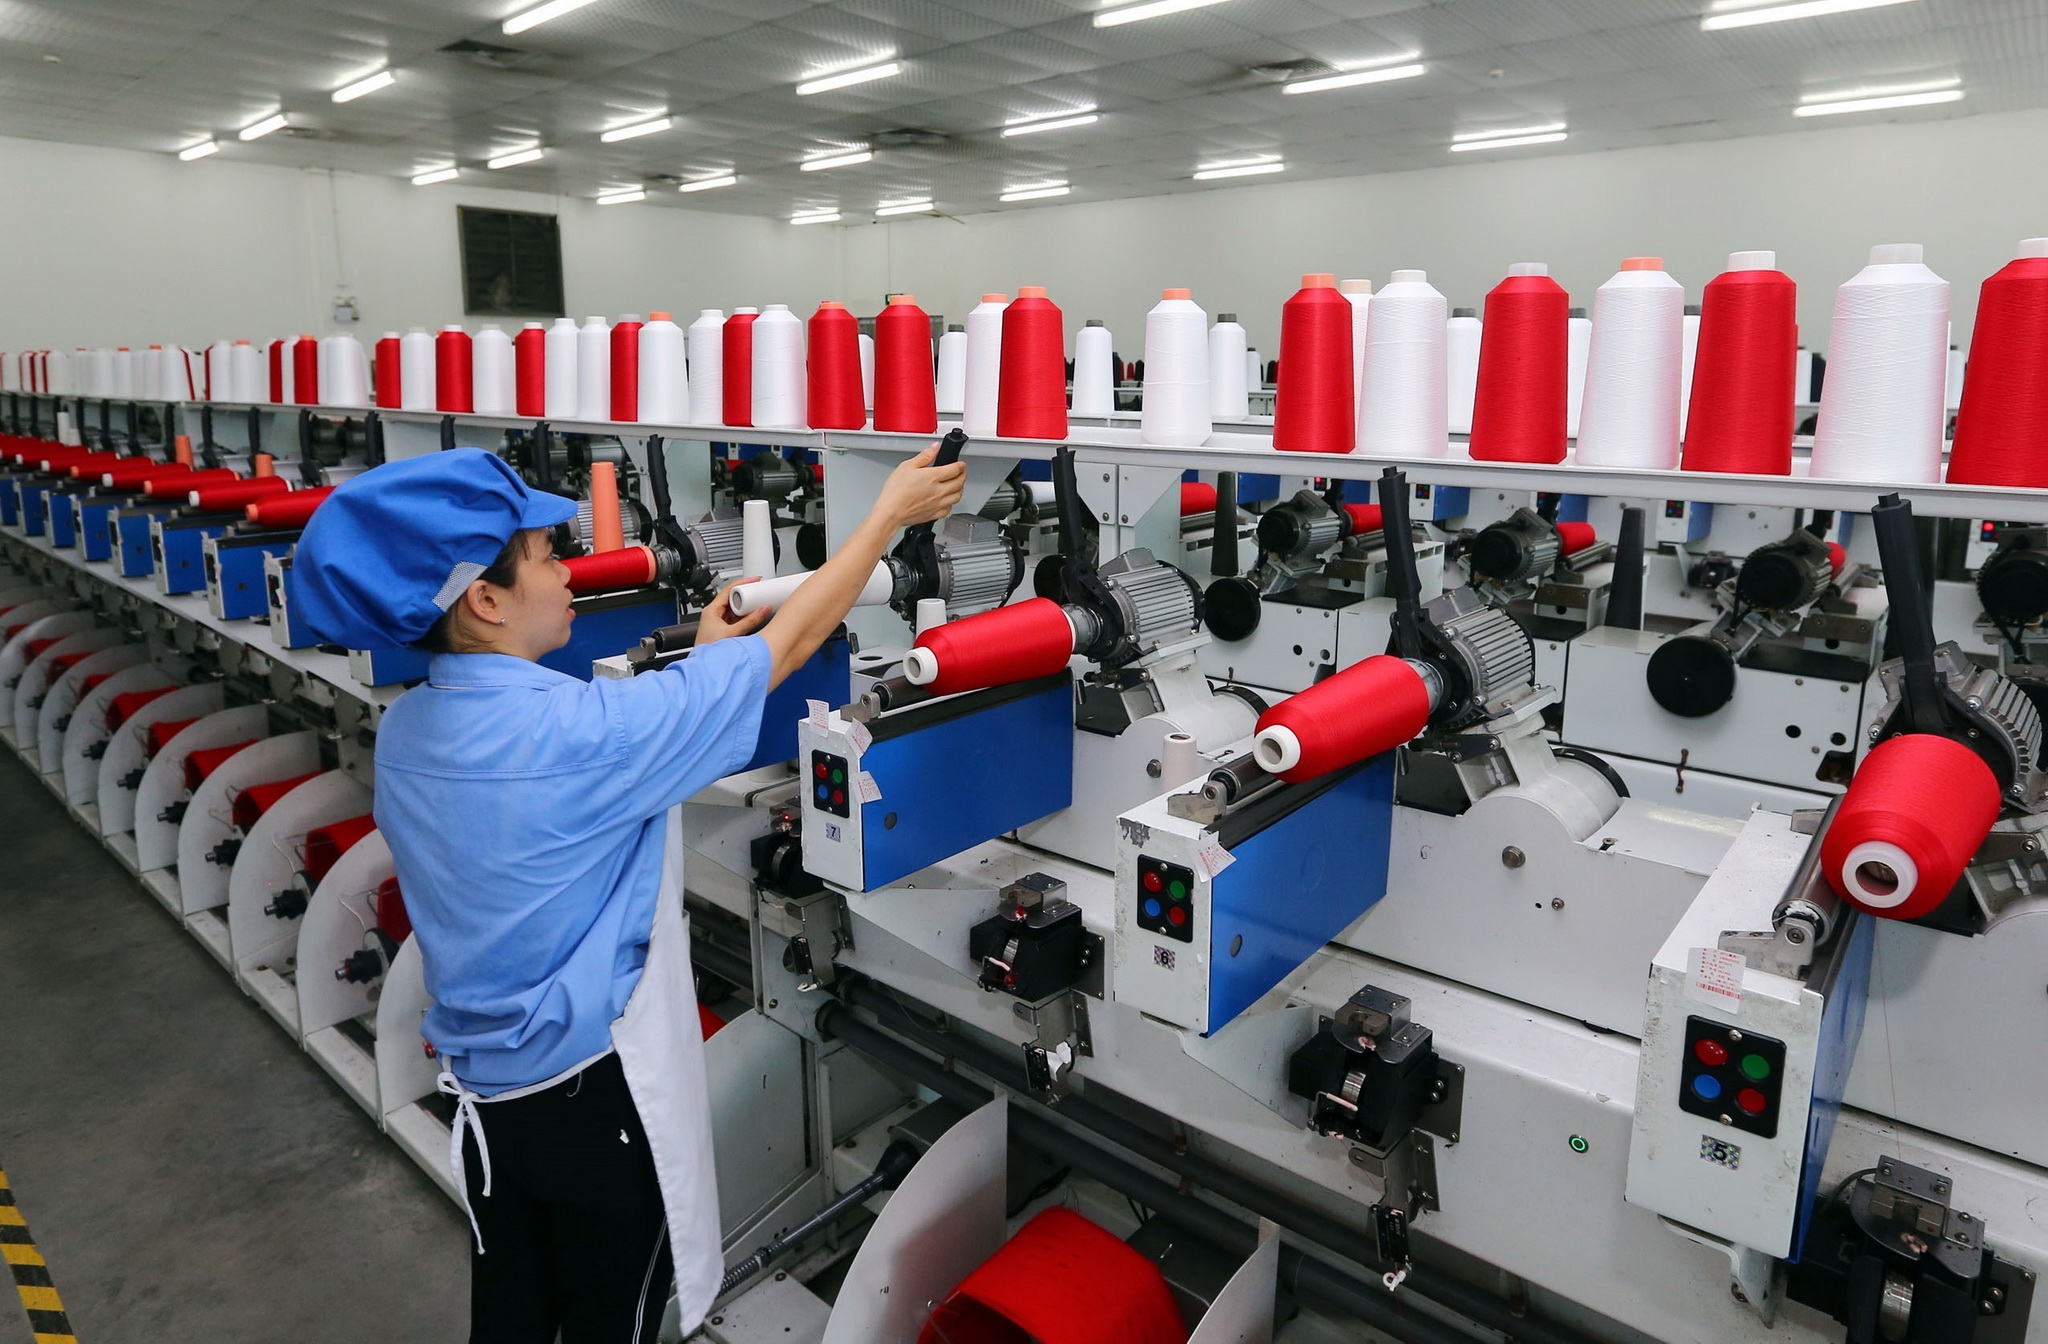 Dây chuyền sản xuất sợi tại Công ty trách nhiệm hữu hạn Dệt nhuộm Jasan Việt Nam, Khu công nghiệp dệt may Phố Nối B (Hưng Yên). (Ảnh: Danh Lam/TTXVN)